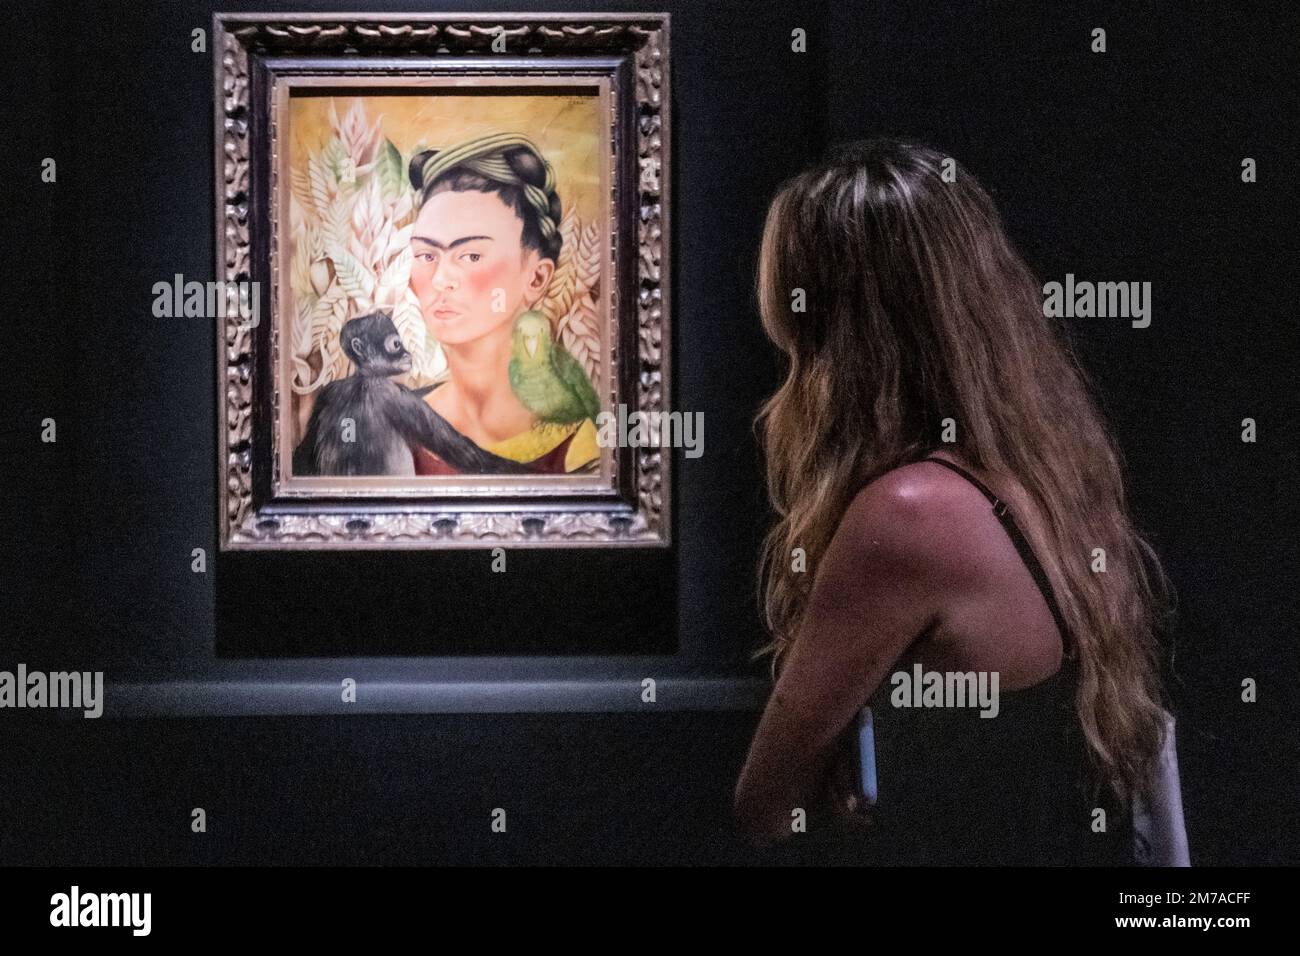 Frida Kahlo : 'Autorretrato con chango y loro' (Autoportrait avec singe et perroquet) - (1942). Museo de Arte Latinoamericano (MALBA). Buenos Aires, Argentine Banque D'Images